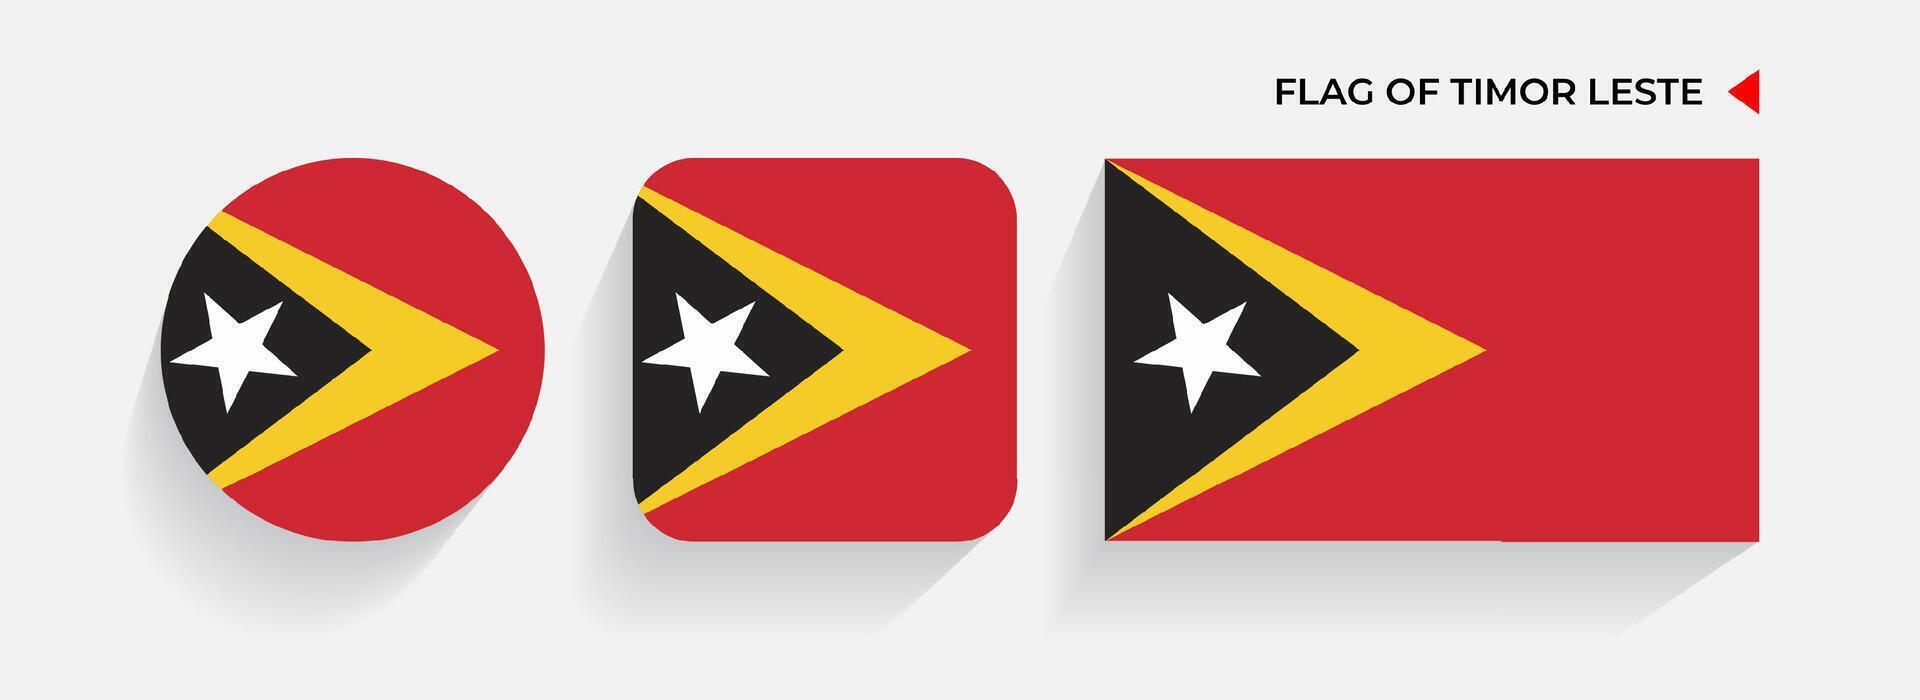 Timor leste Flaggen vereinbart worden im runden, Platz und rechteckig Formen vektor